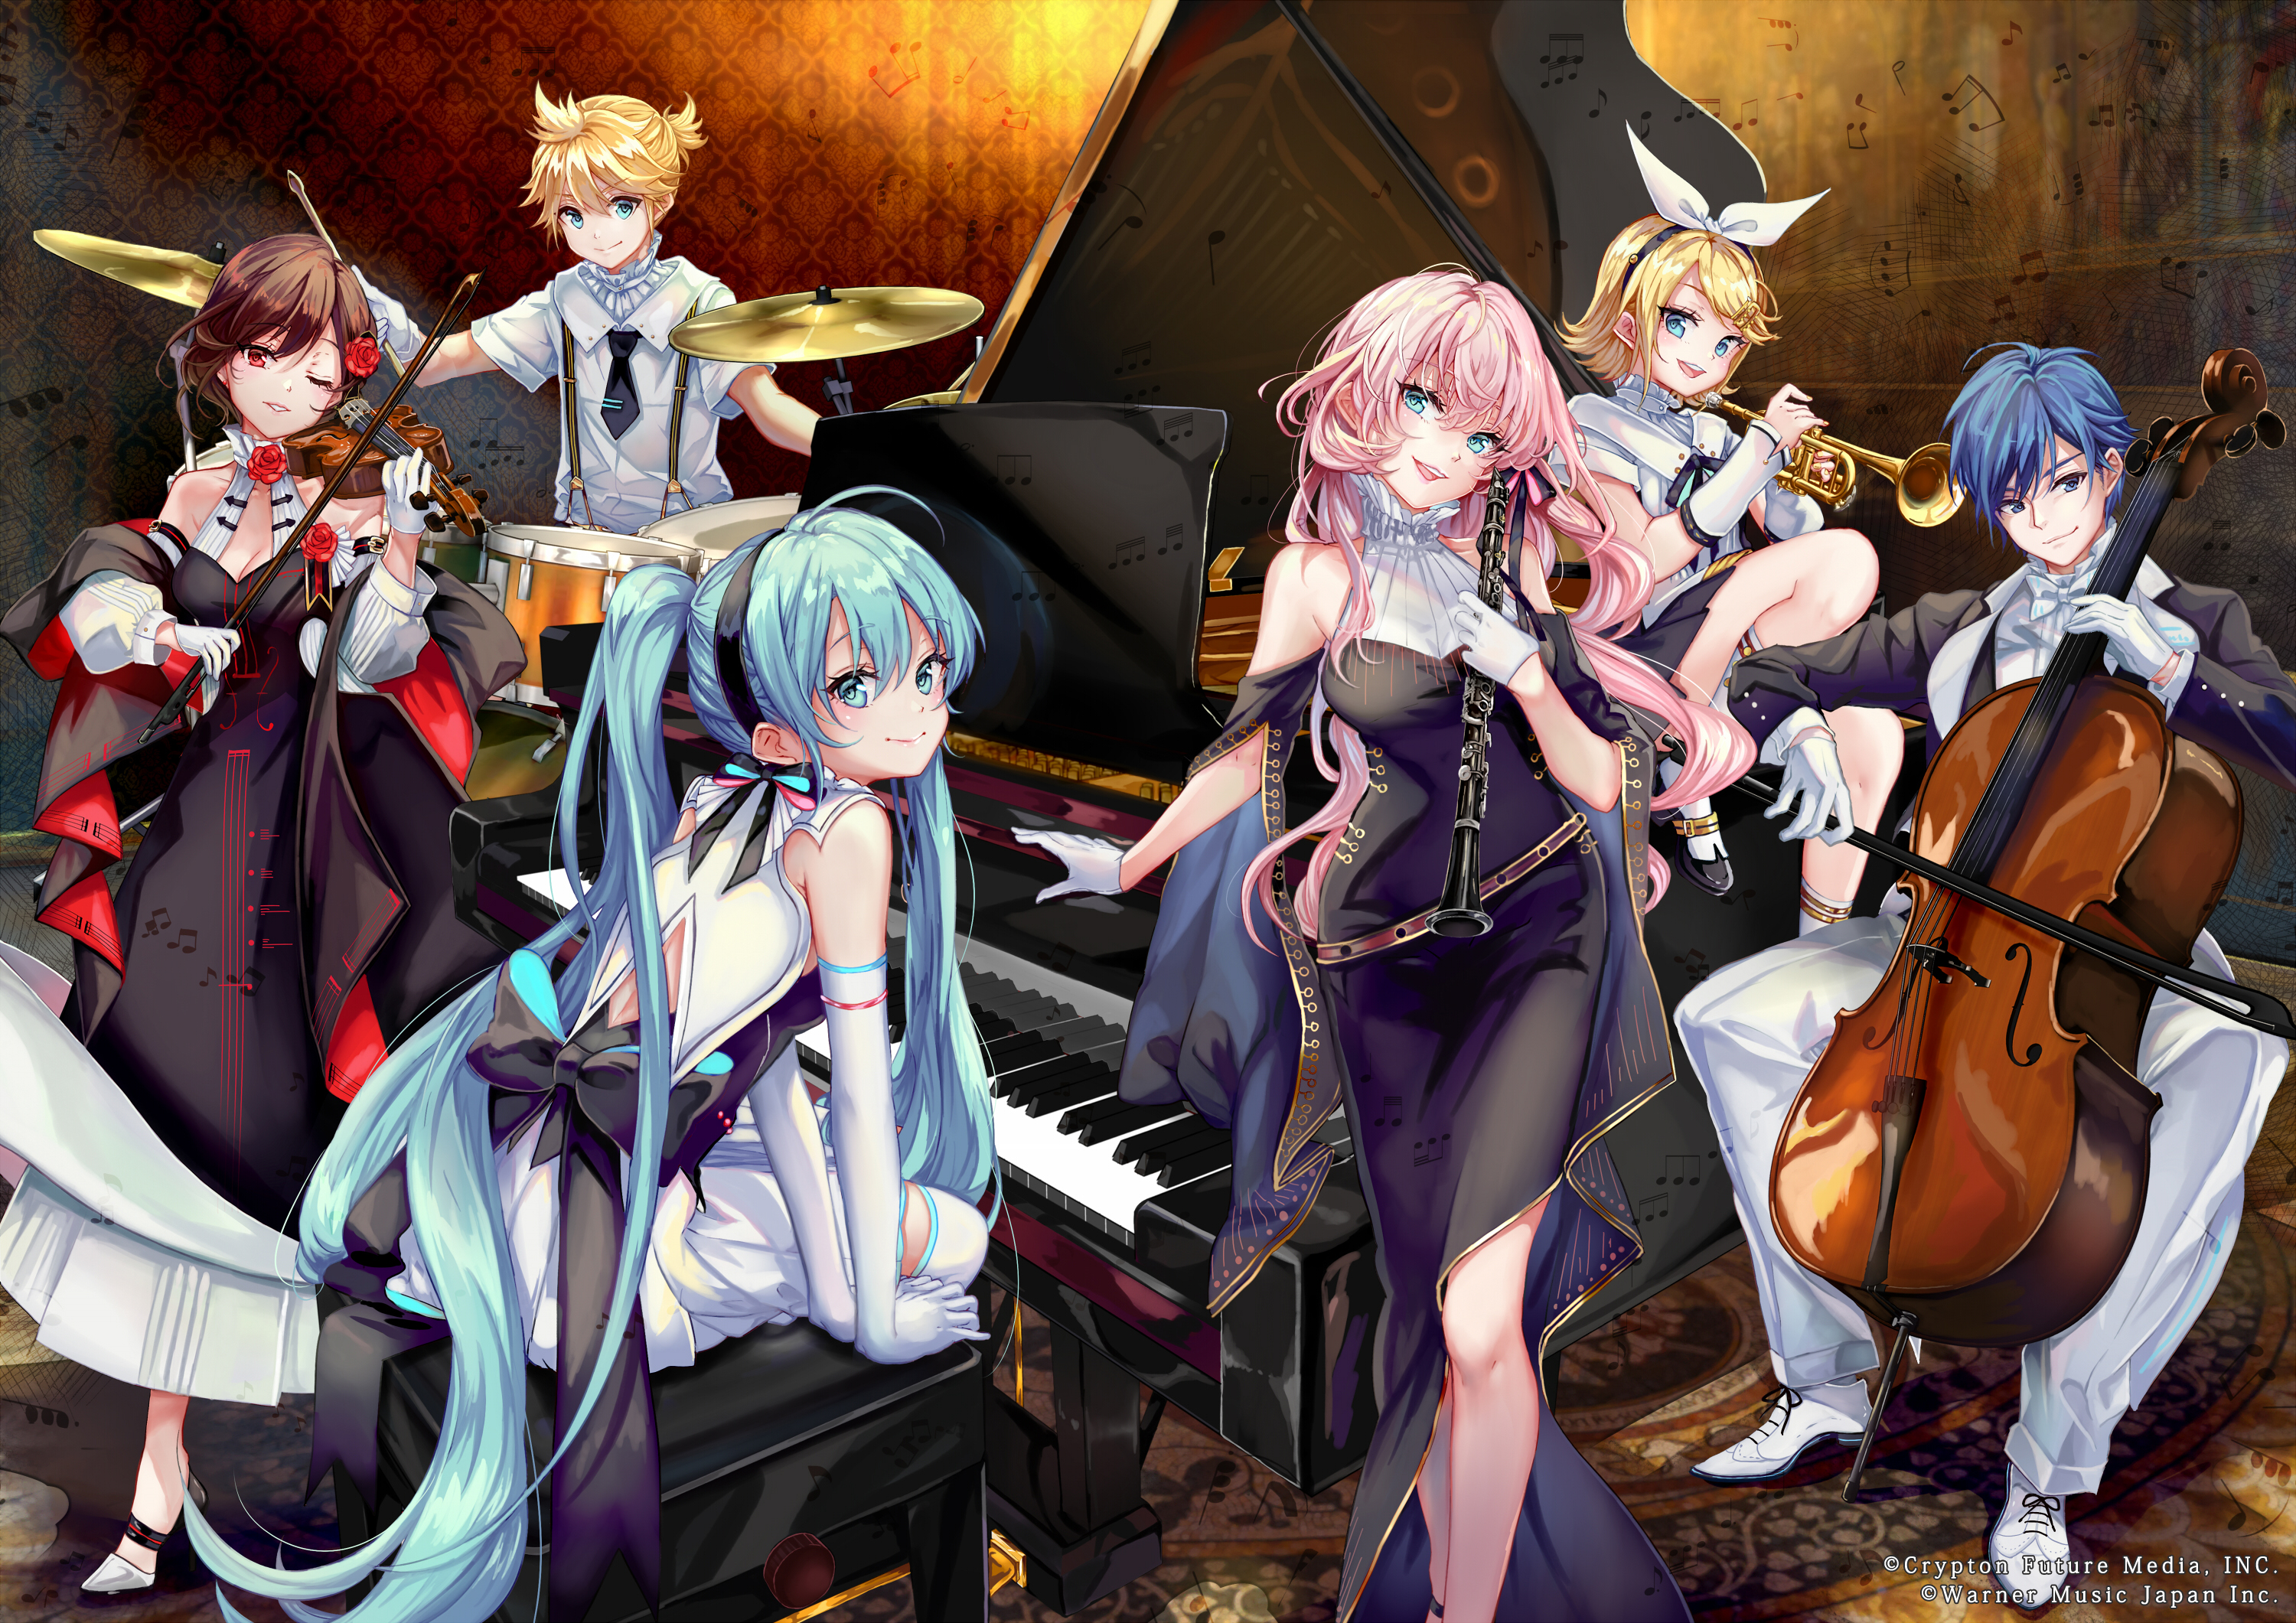 Descarga gratuita de fondo de pantalla para móvil de Vocaloid, Luka Megurine, Animado, Rin Kagamine, Kaito (Vocaloid), Len Kagamine, Meiko (Vocaloid).